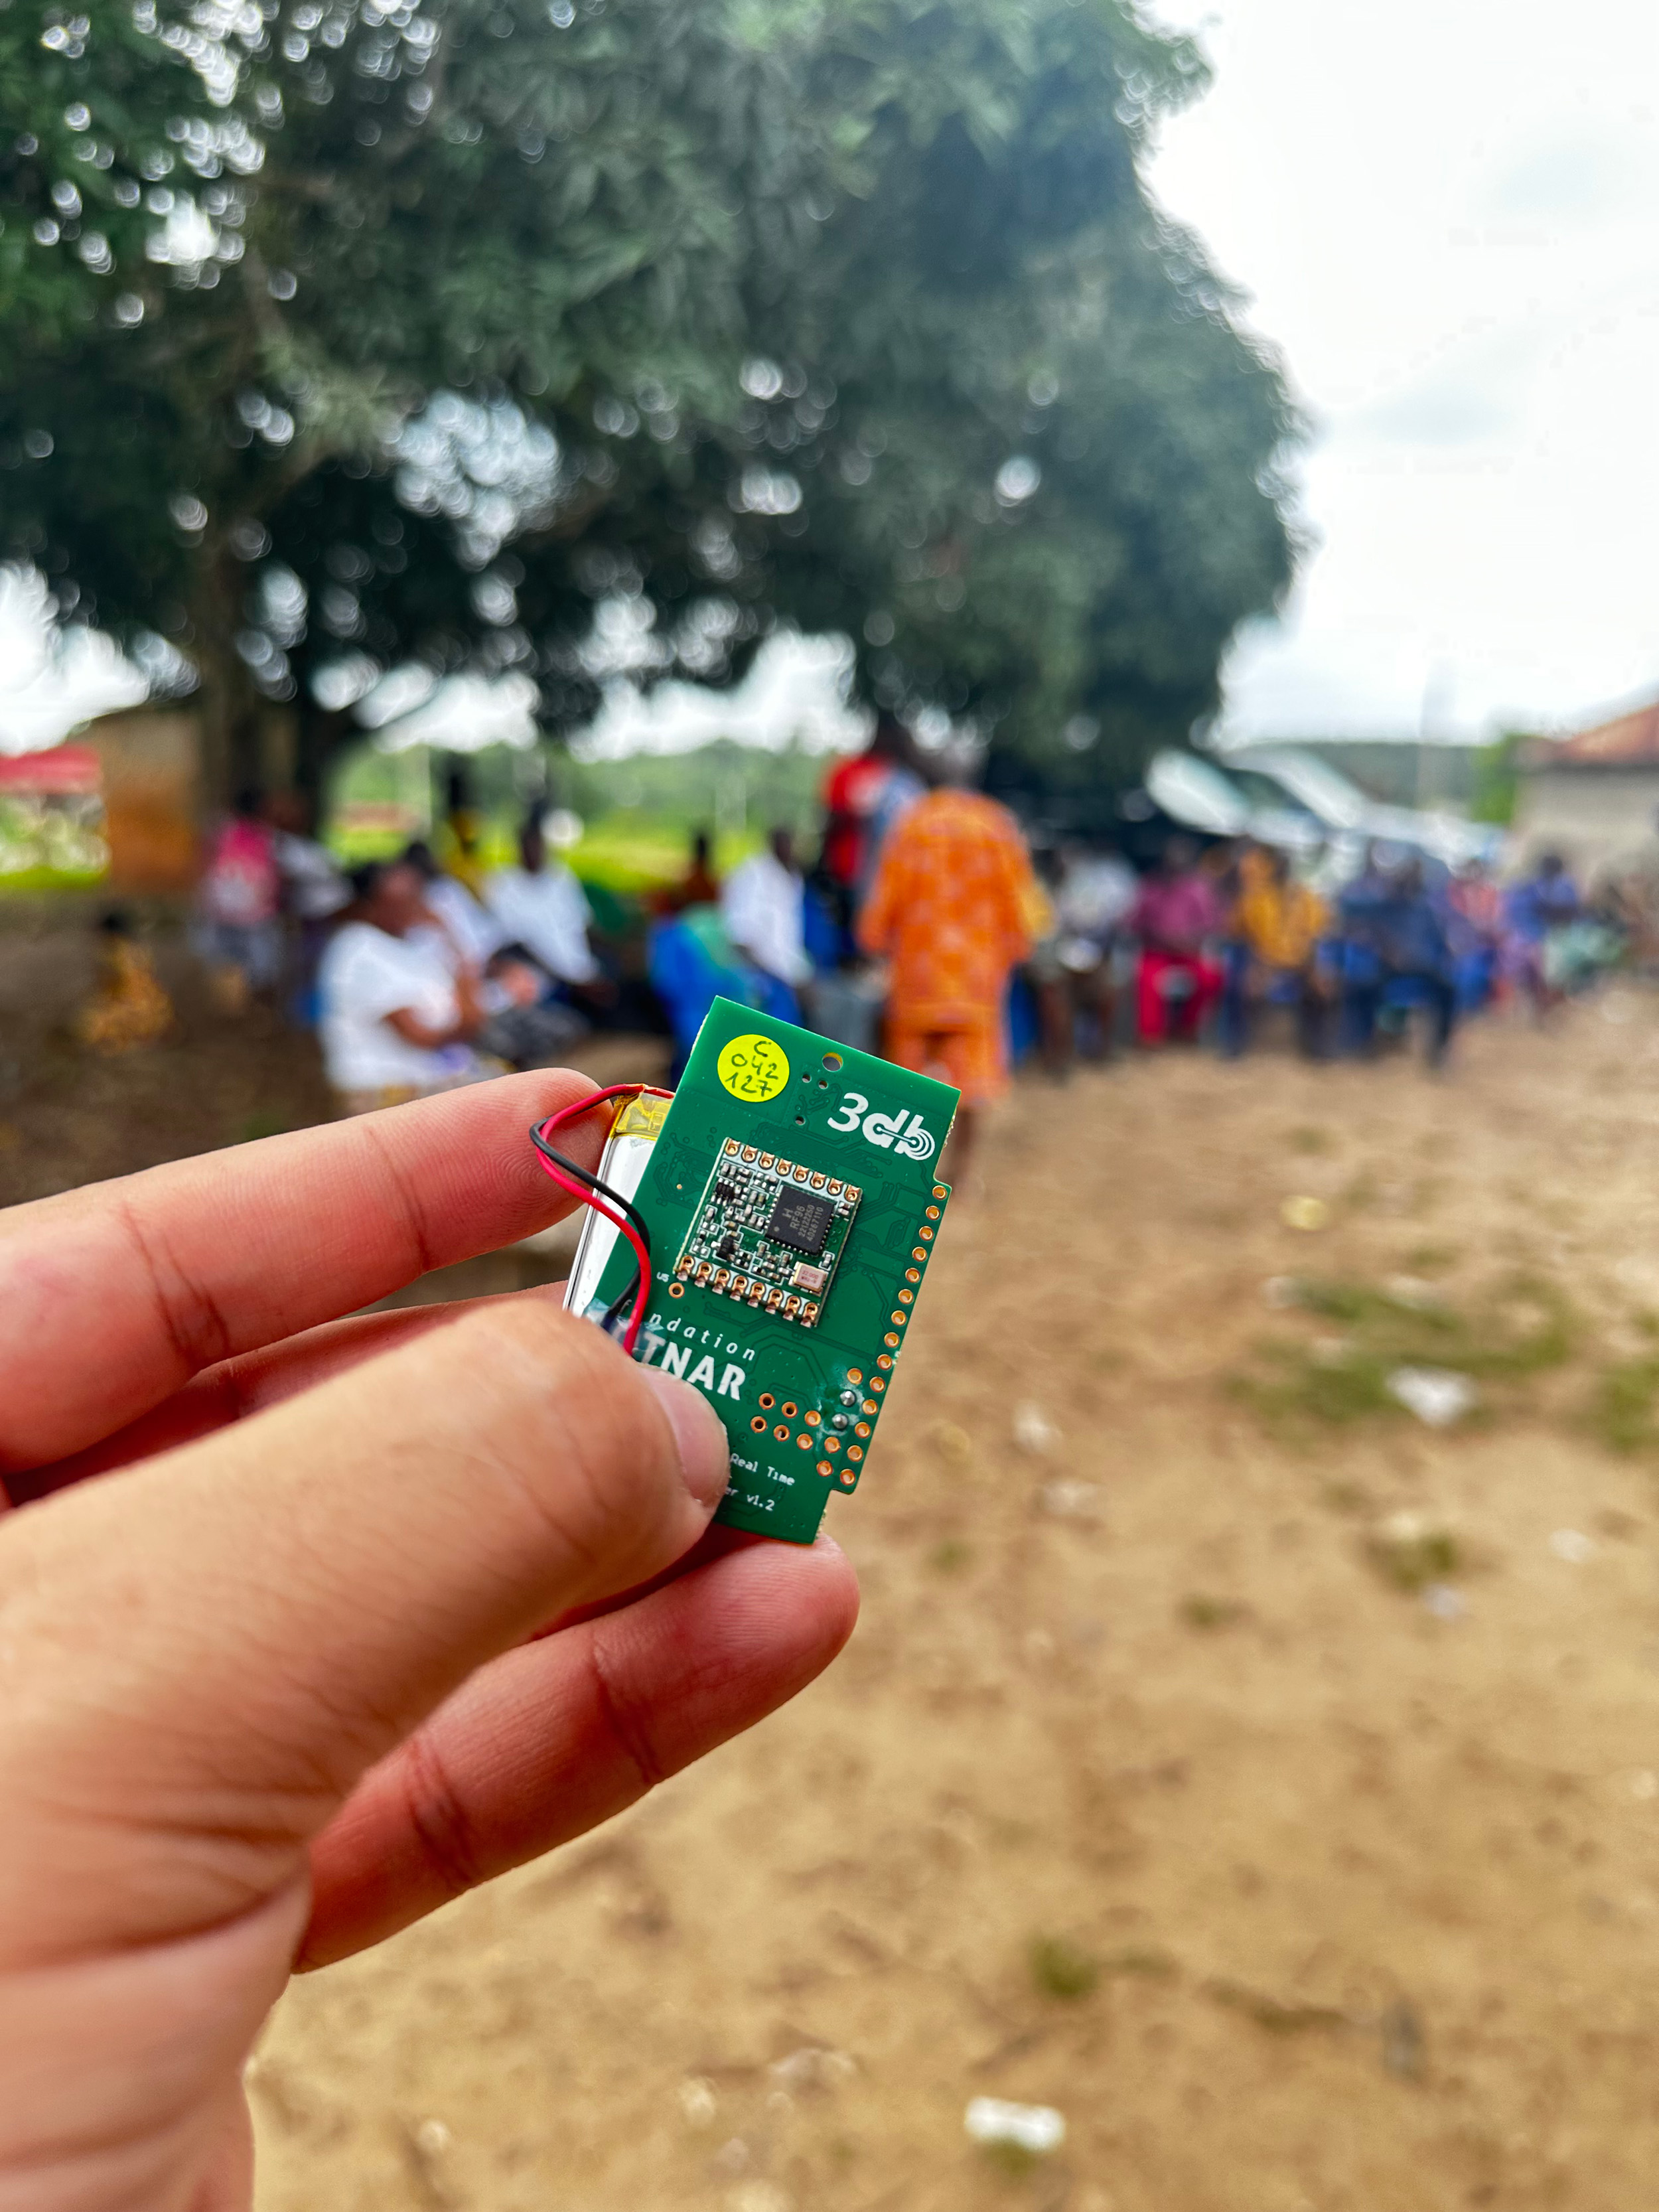 Vergr?sserte Ansicht: Hand welche den kleinen grünen Sensor hält, im Hintergrund ist ein afrikanisches Dorf erkennbar.